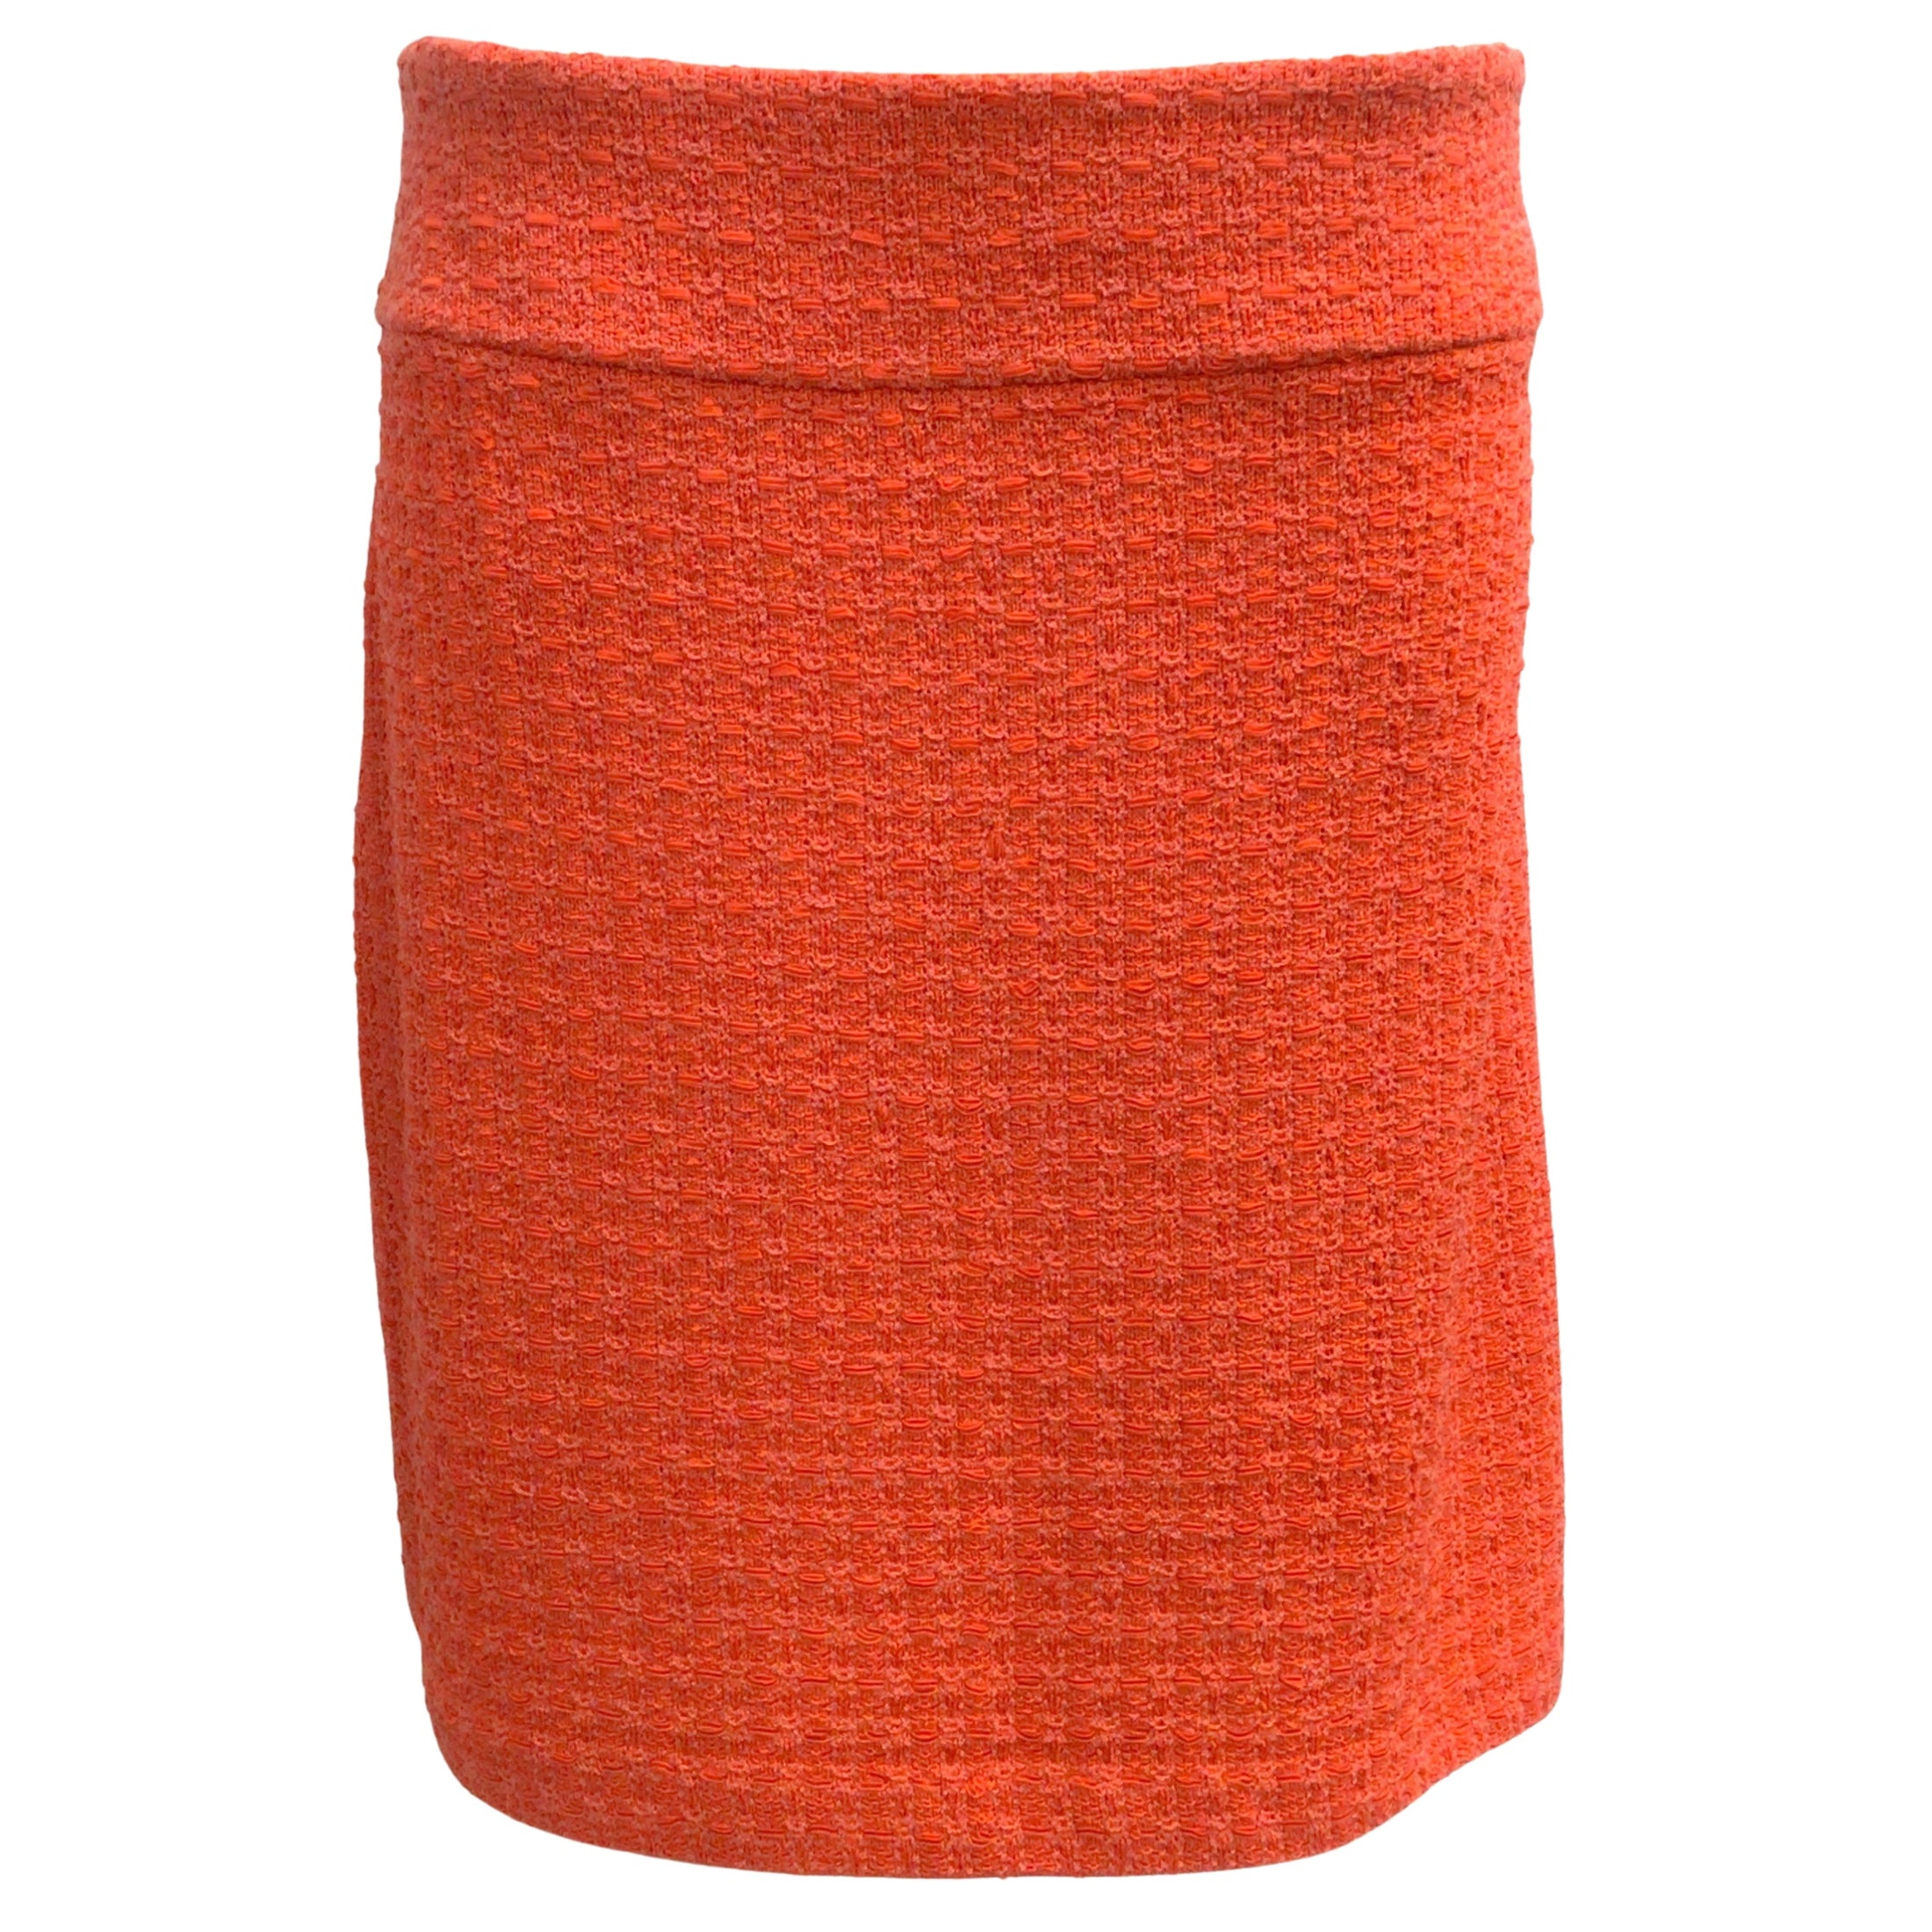 St. John Tangerine Ribbon Textured Windowpane Knit Skirt